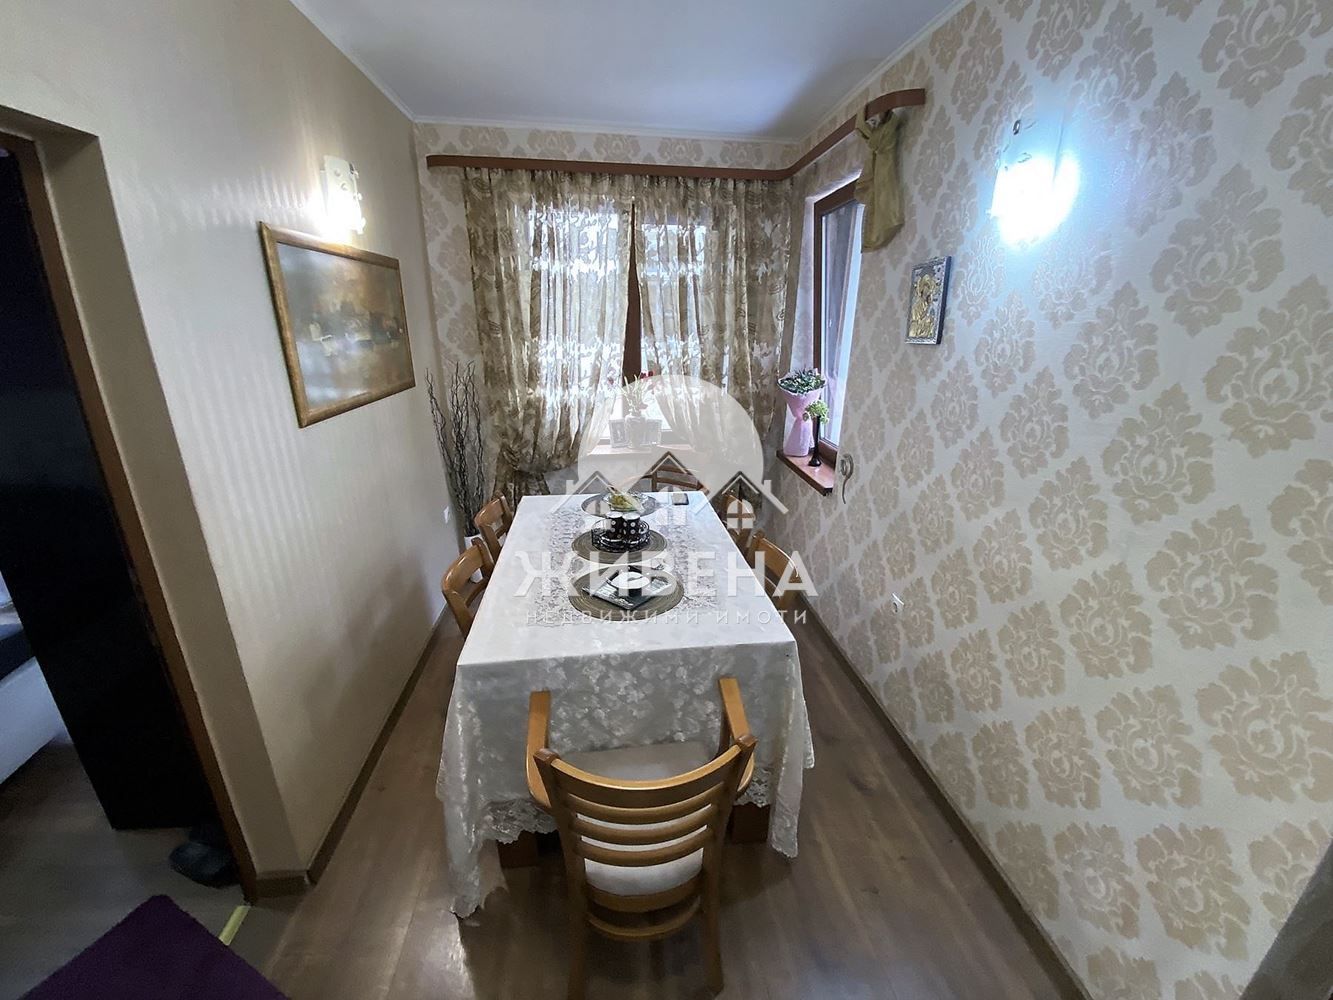 4-стаен апартамент в Идеален център, Варна, обща площ 180 кв.м